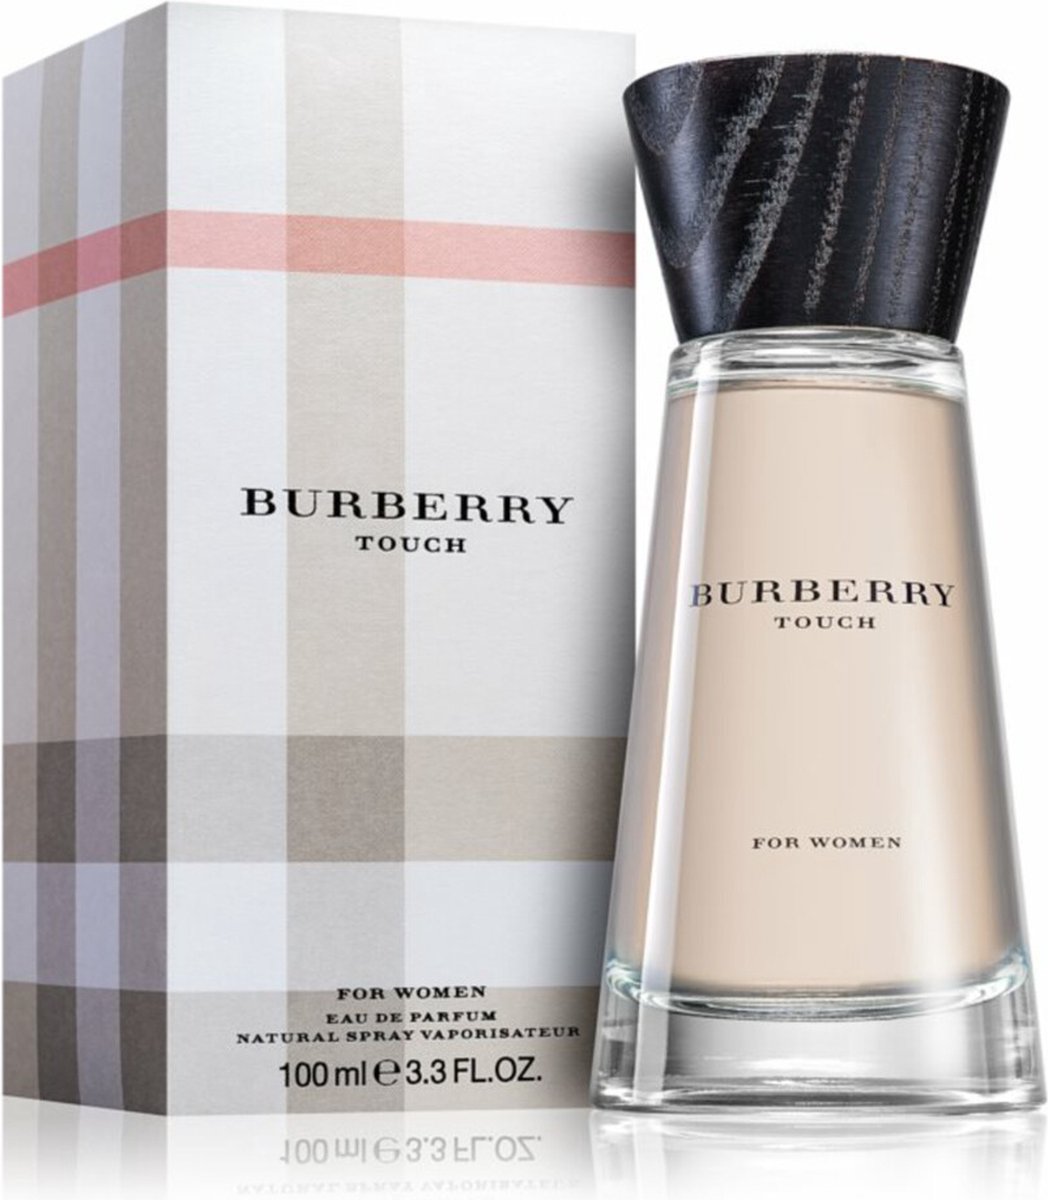 Burberry Touch Woman 100 ml - Eau de parfum - for Women